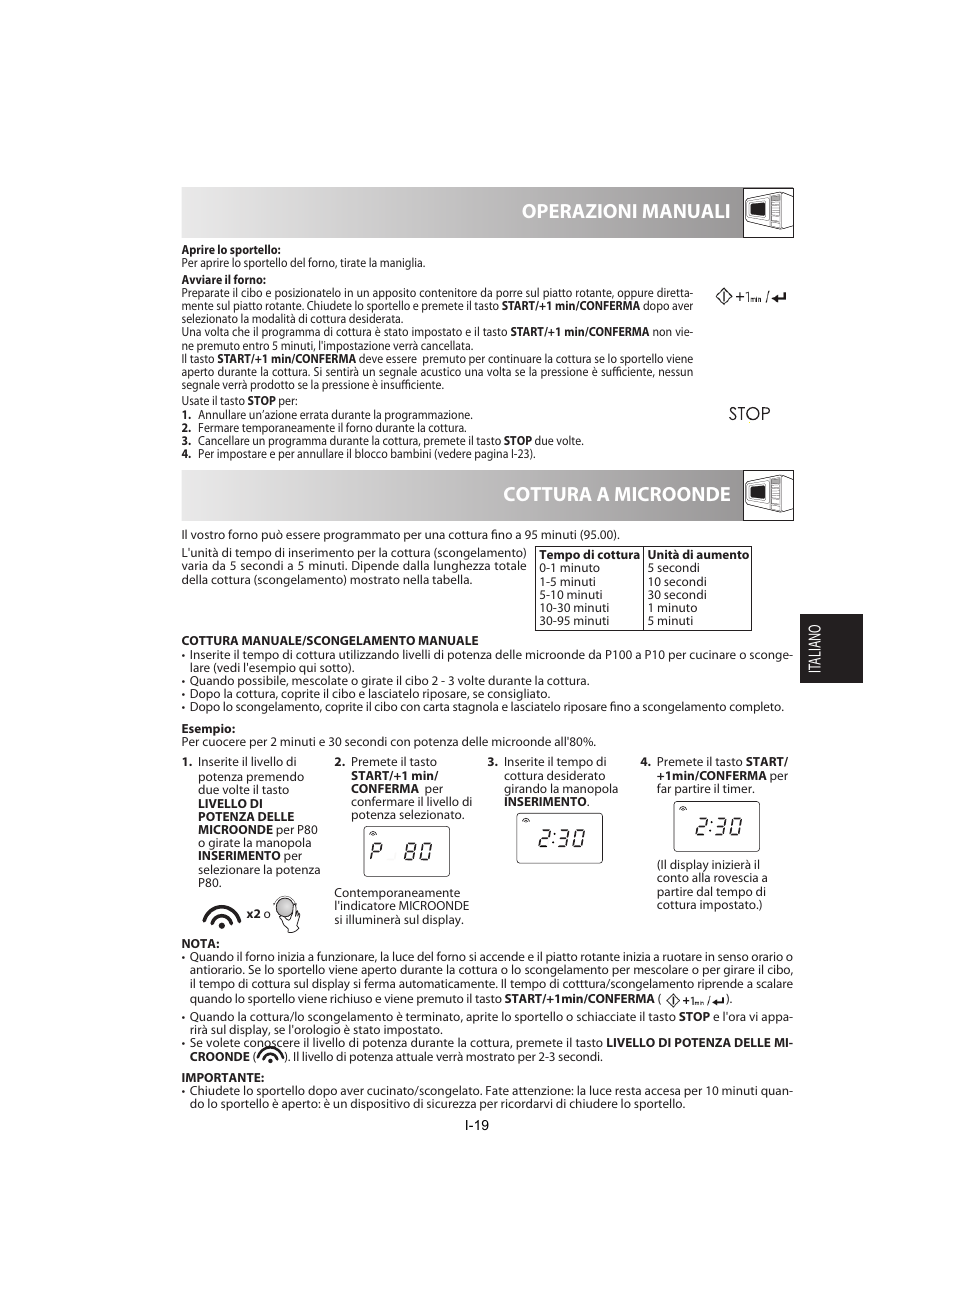 Cottura a microonde operazioni manuali | Sharp R-842INE User Manual | Page 133 / 312